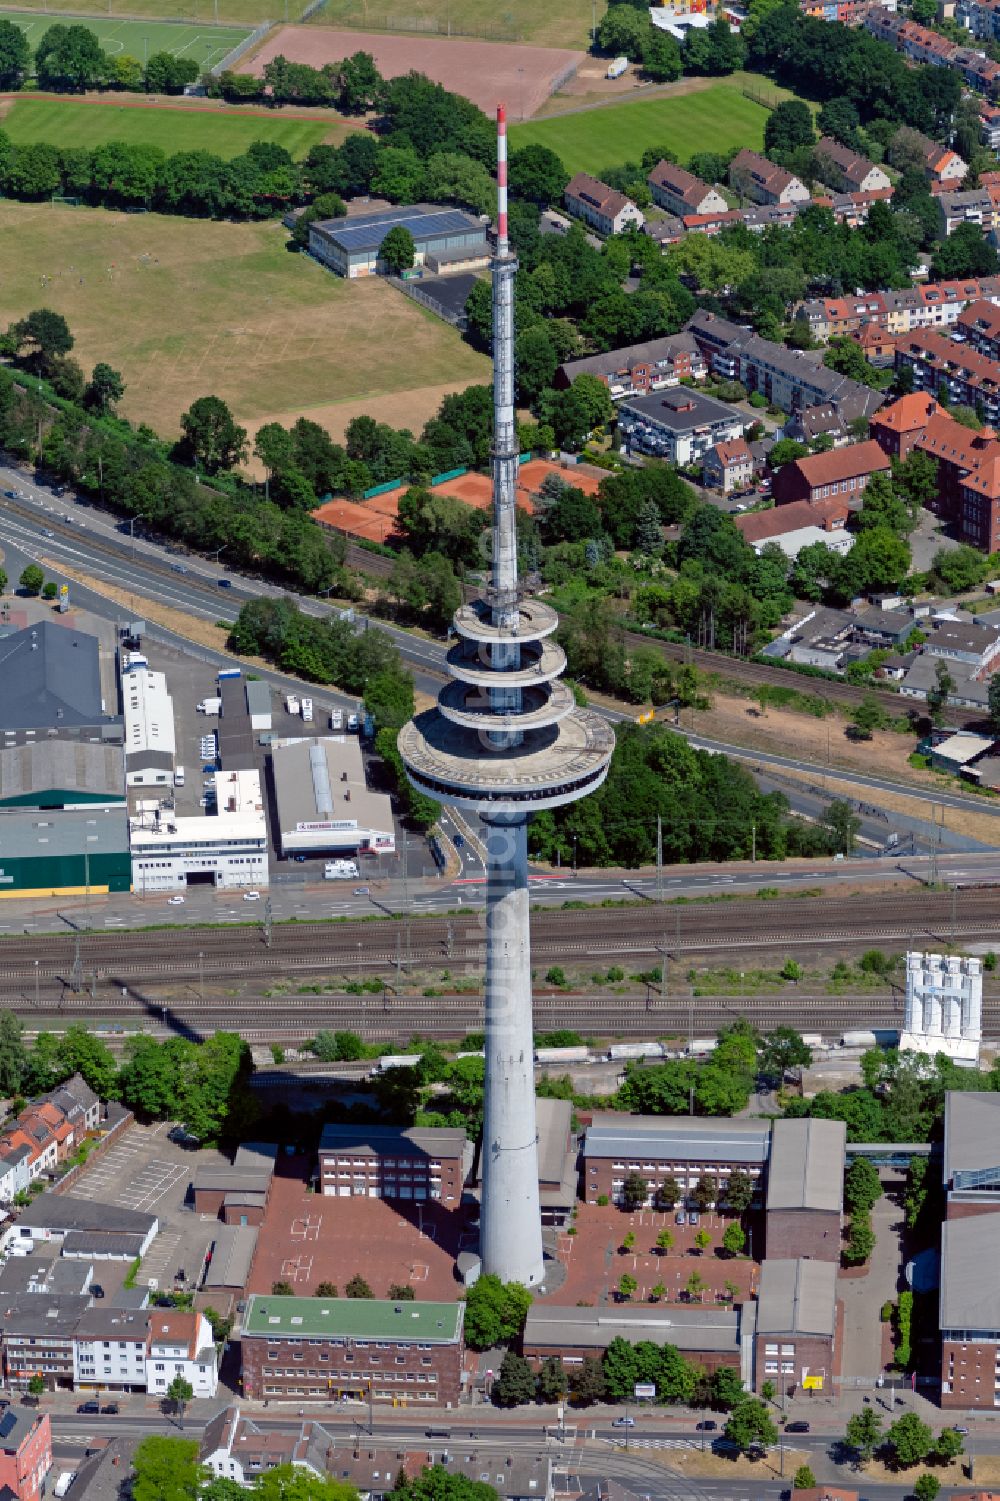 Bremen von oben - Fernmeldeturm - Fernsehturm im Stadtteil Walle im Norden von Bremen